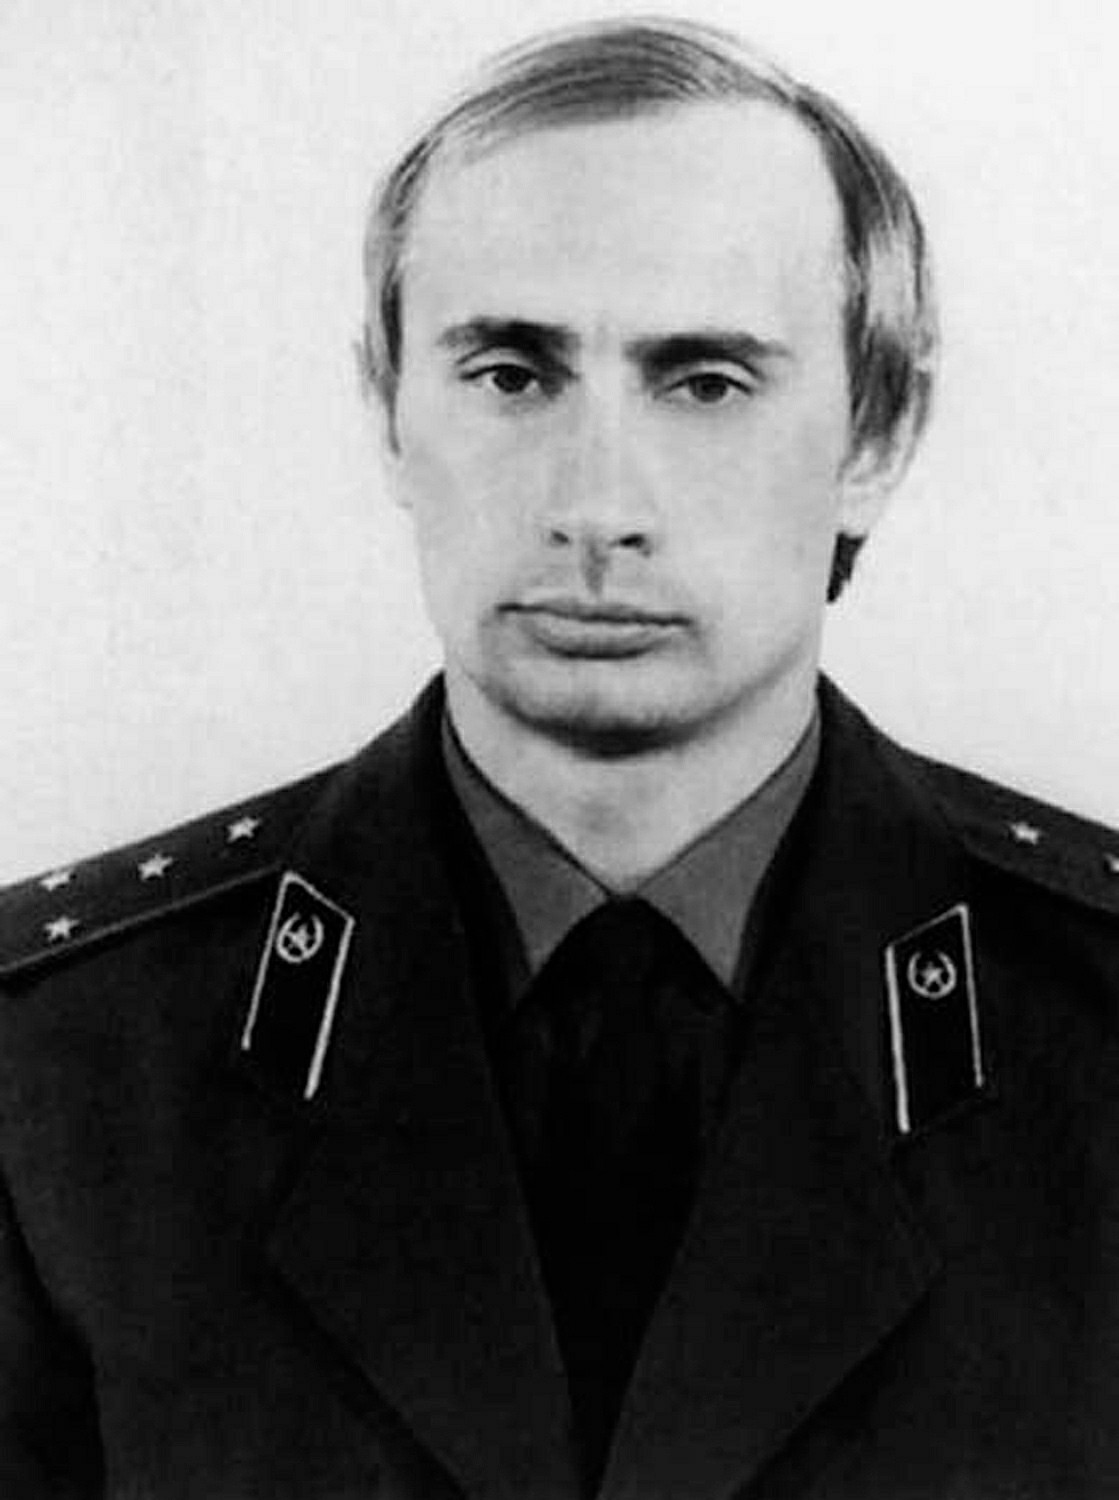 Putin vestido com uniforme da KGB, em meados dos anos 1980